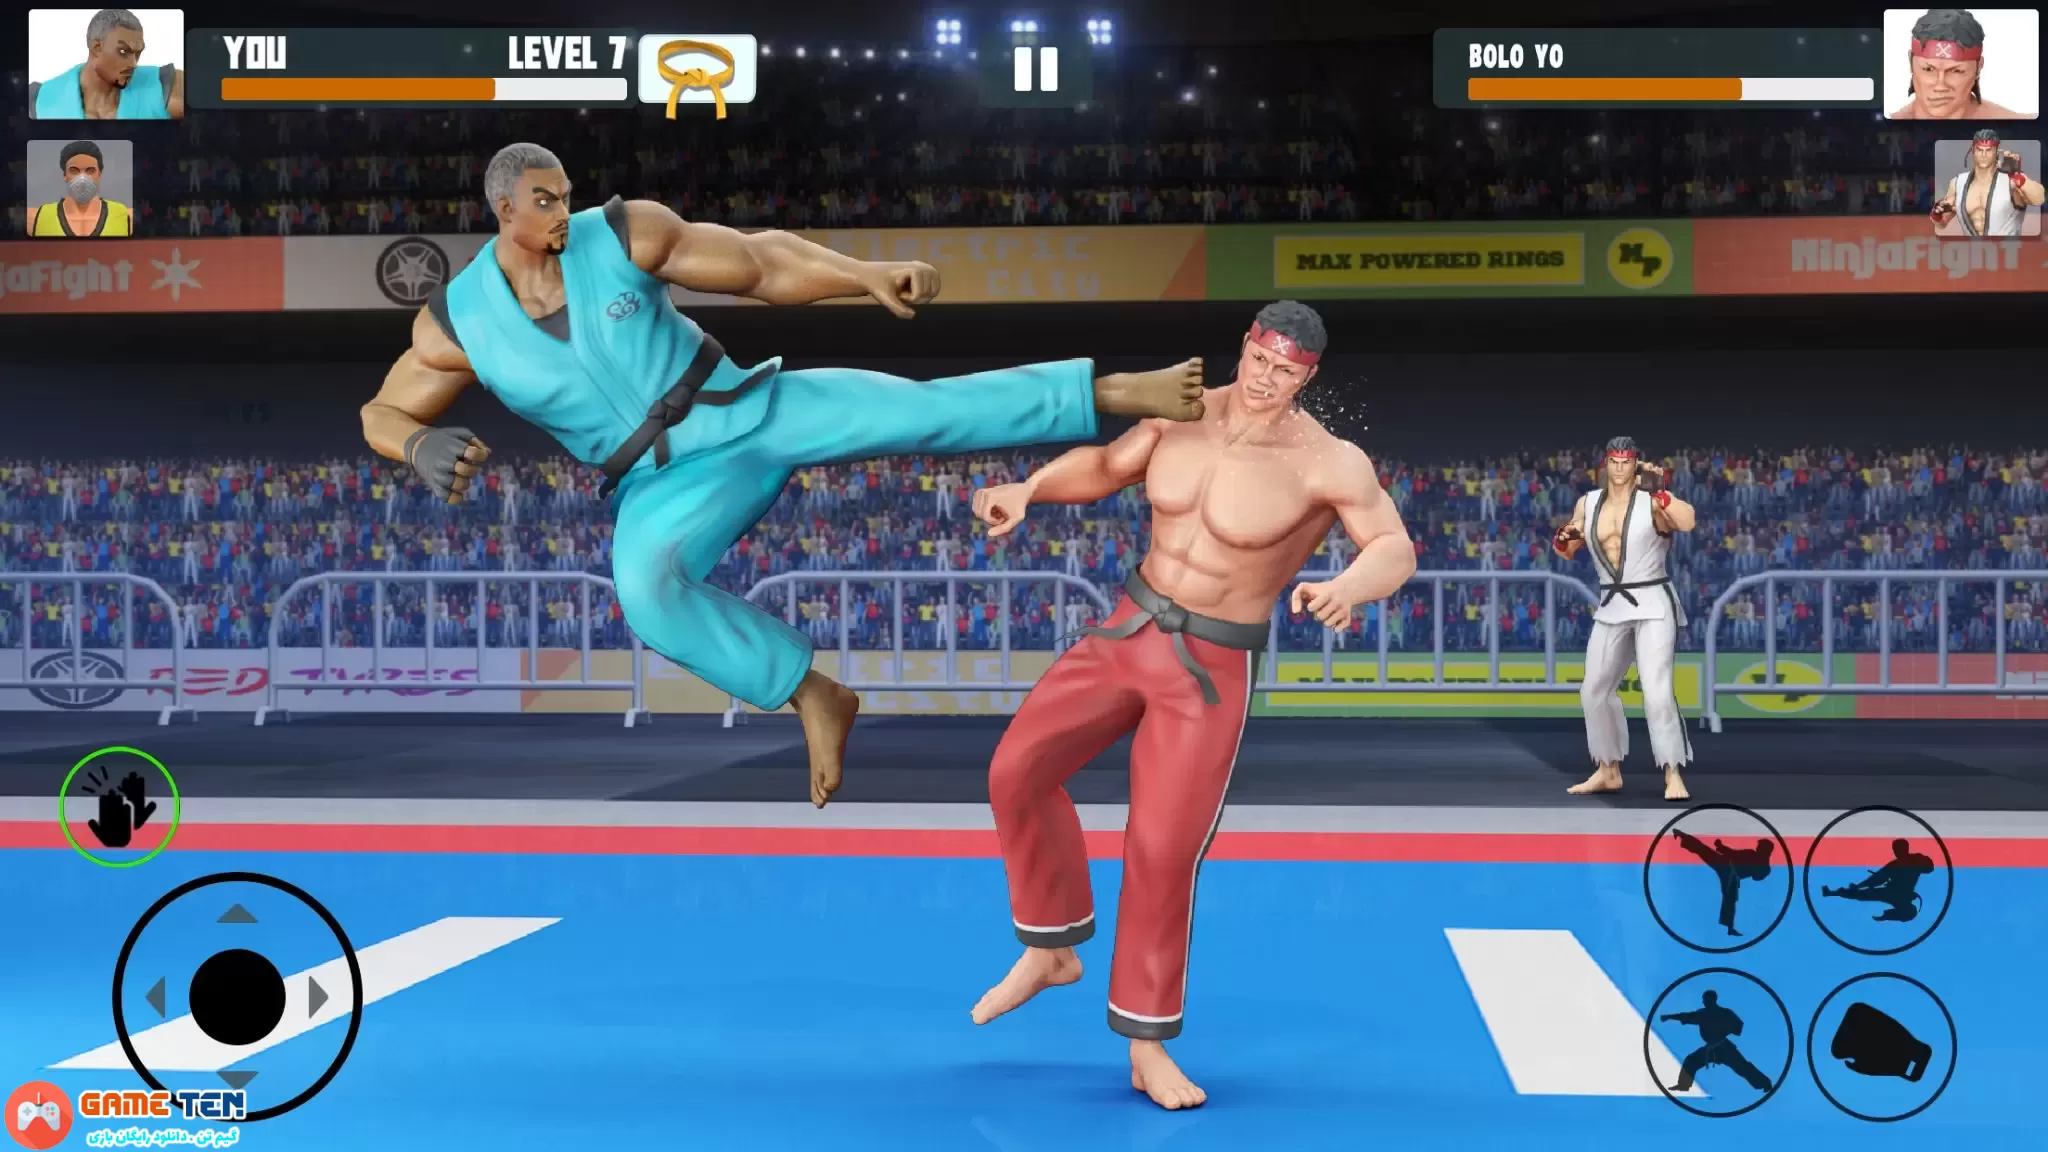 دانلود Karate Fighter: Fighting Games v3.3.0 - بازی مبارز کاراته کار اندروید + مود